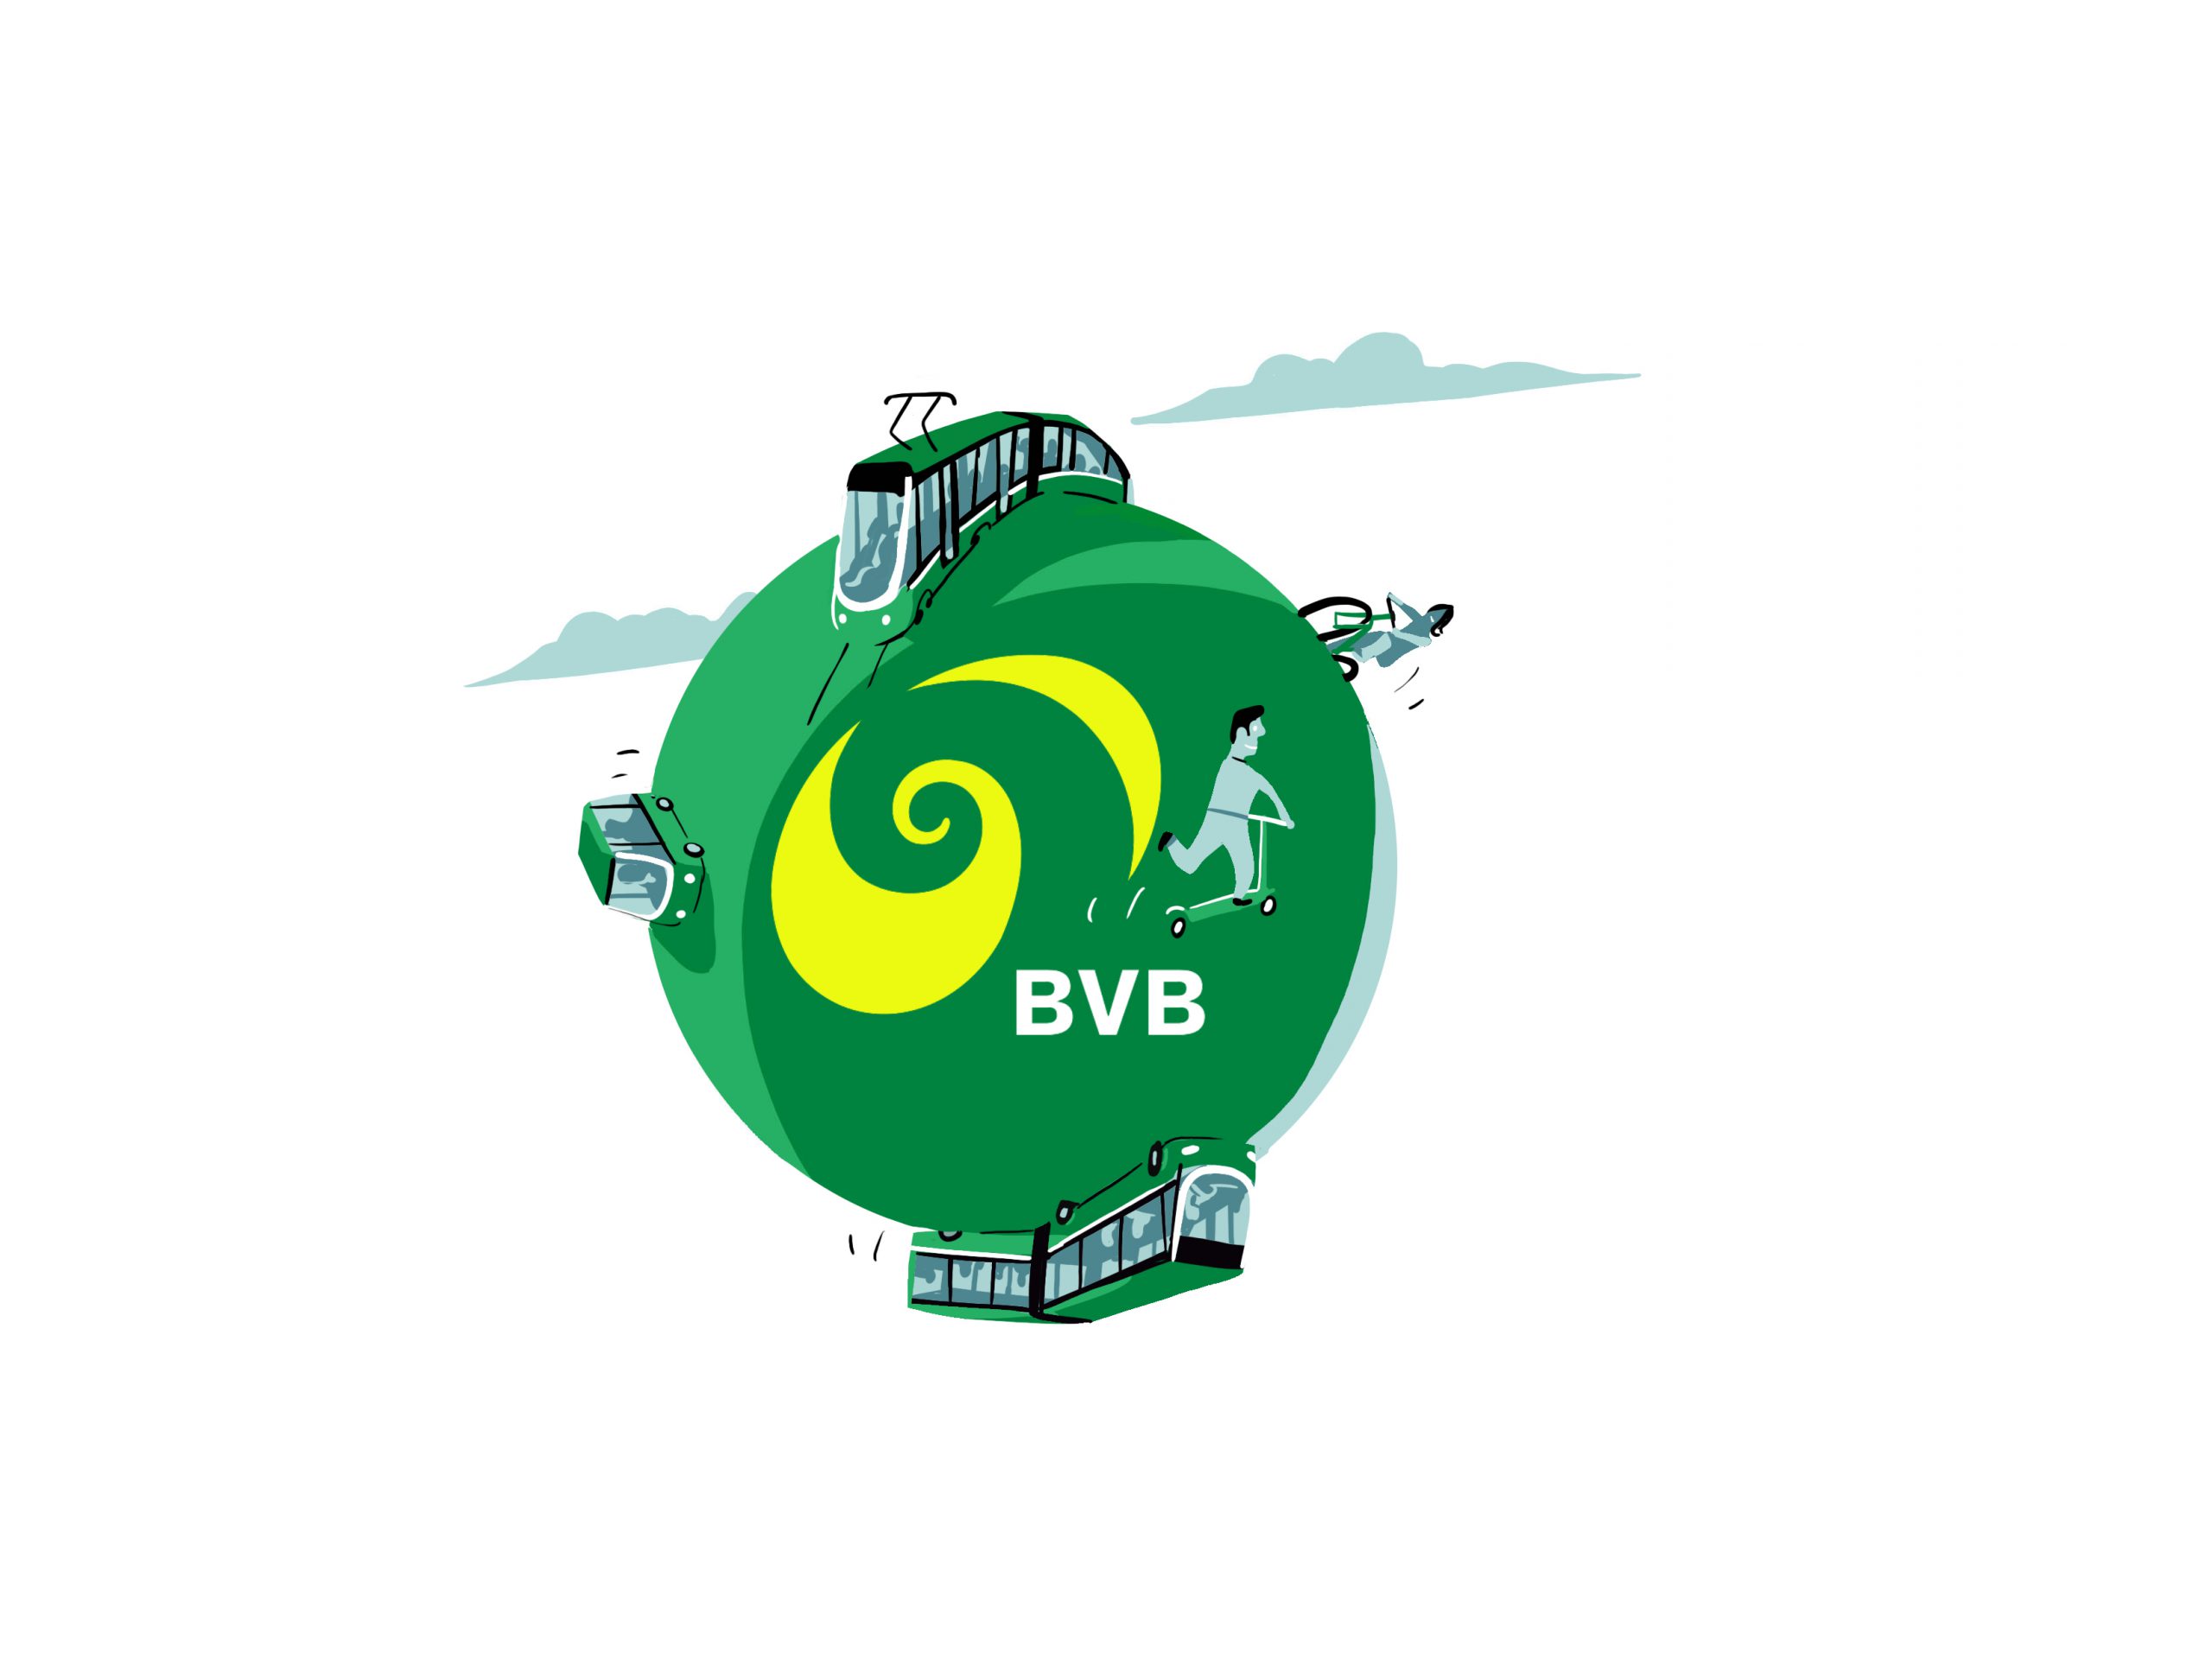 Nachhaltigkeit: Die BVB übernimmt Verantwortung